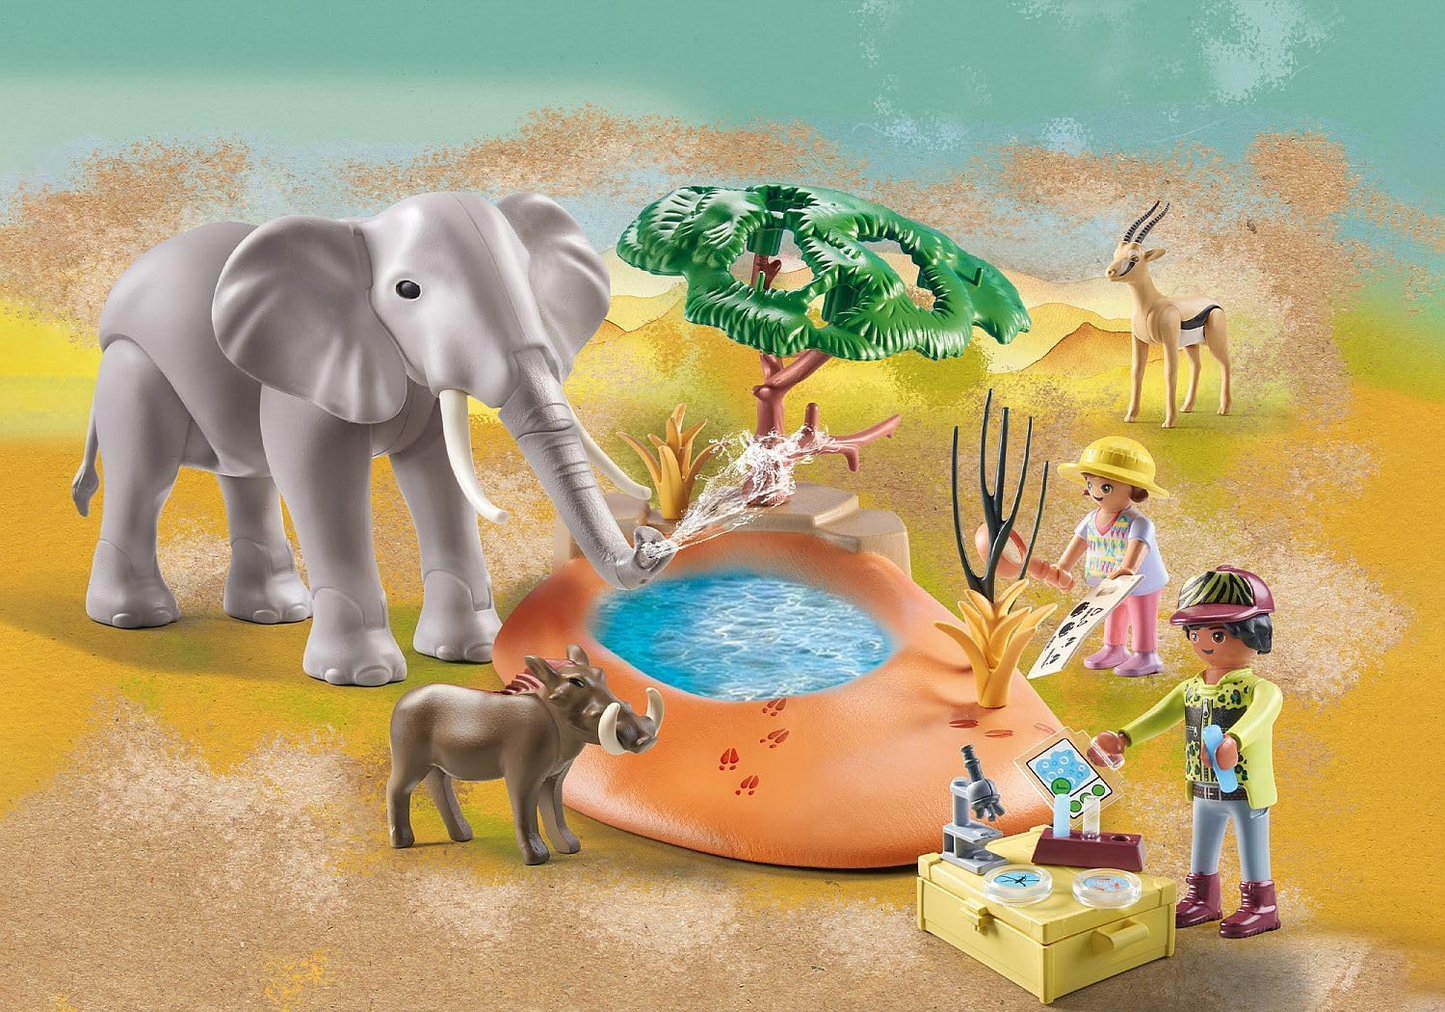 Playmobil 71294 Wiltopia Elefante no Waterhole, safári emocionante com efeito de aprendizagem de animais, brinquedo educativo, dramatização sustentável e divertida e imaginativa, conjuntos de jogos adequados para crianças a partir de 4 anos